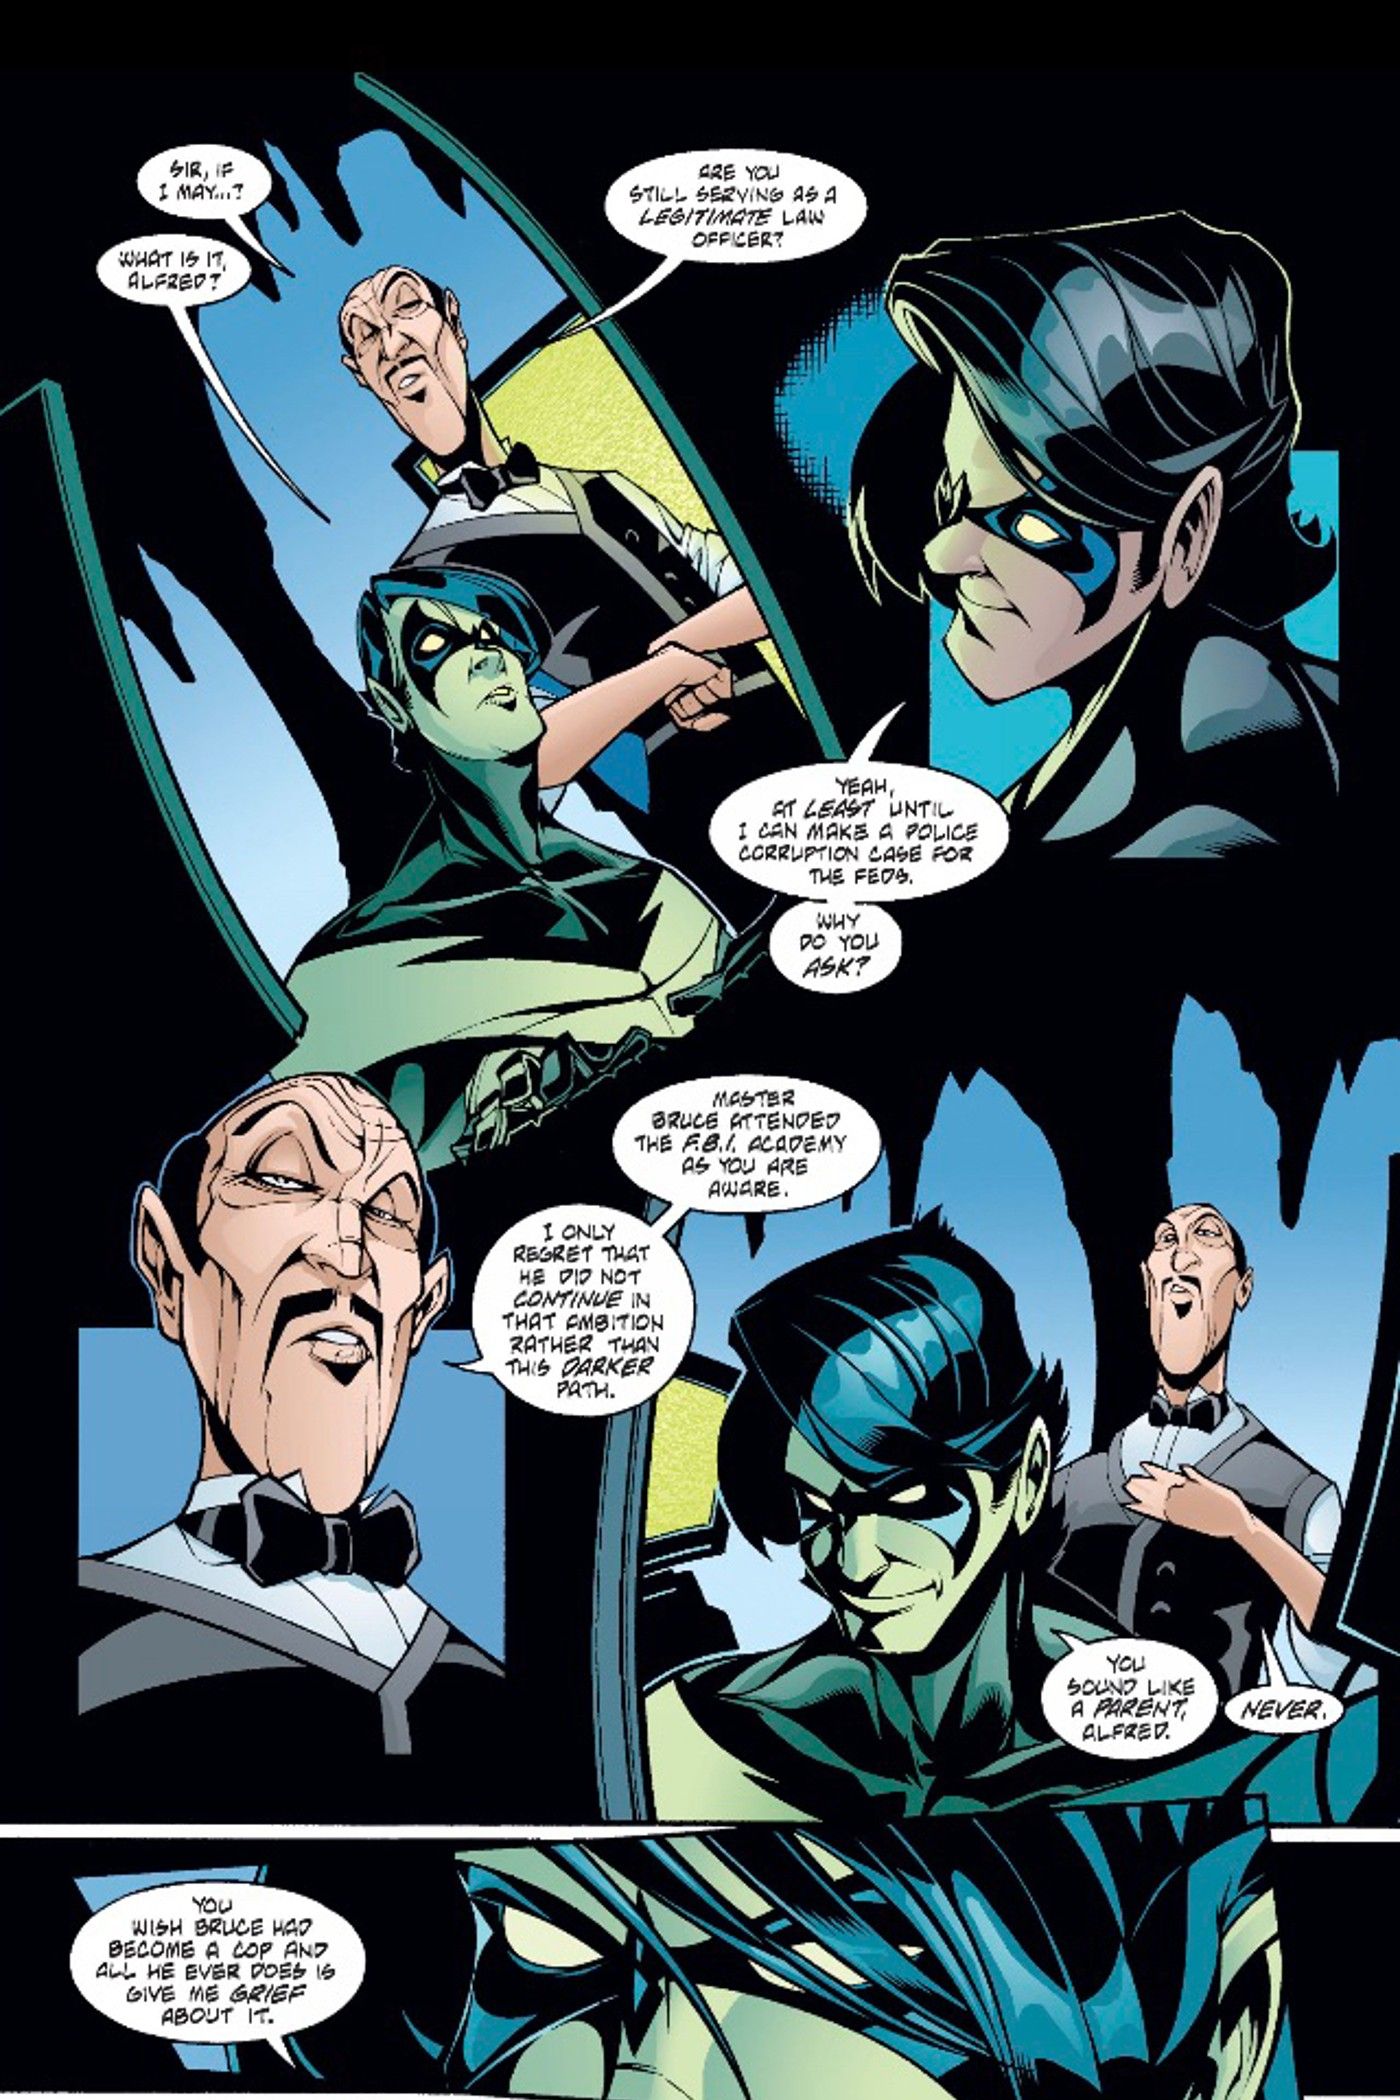 Alfred habla con Nightwing sobre Batman